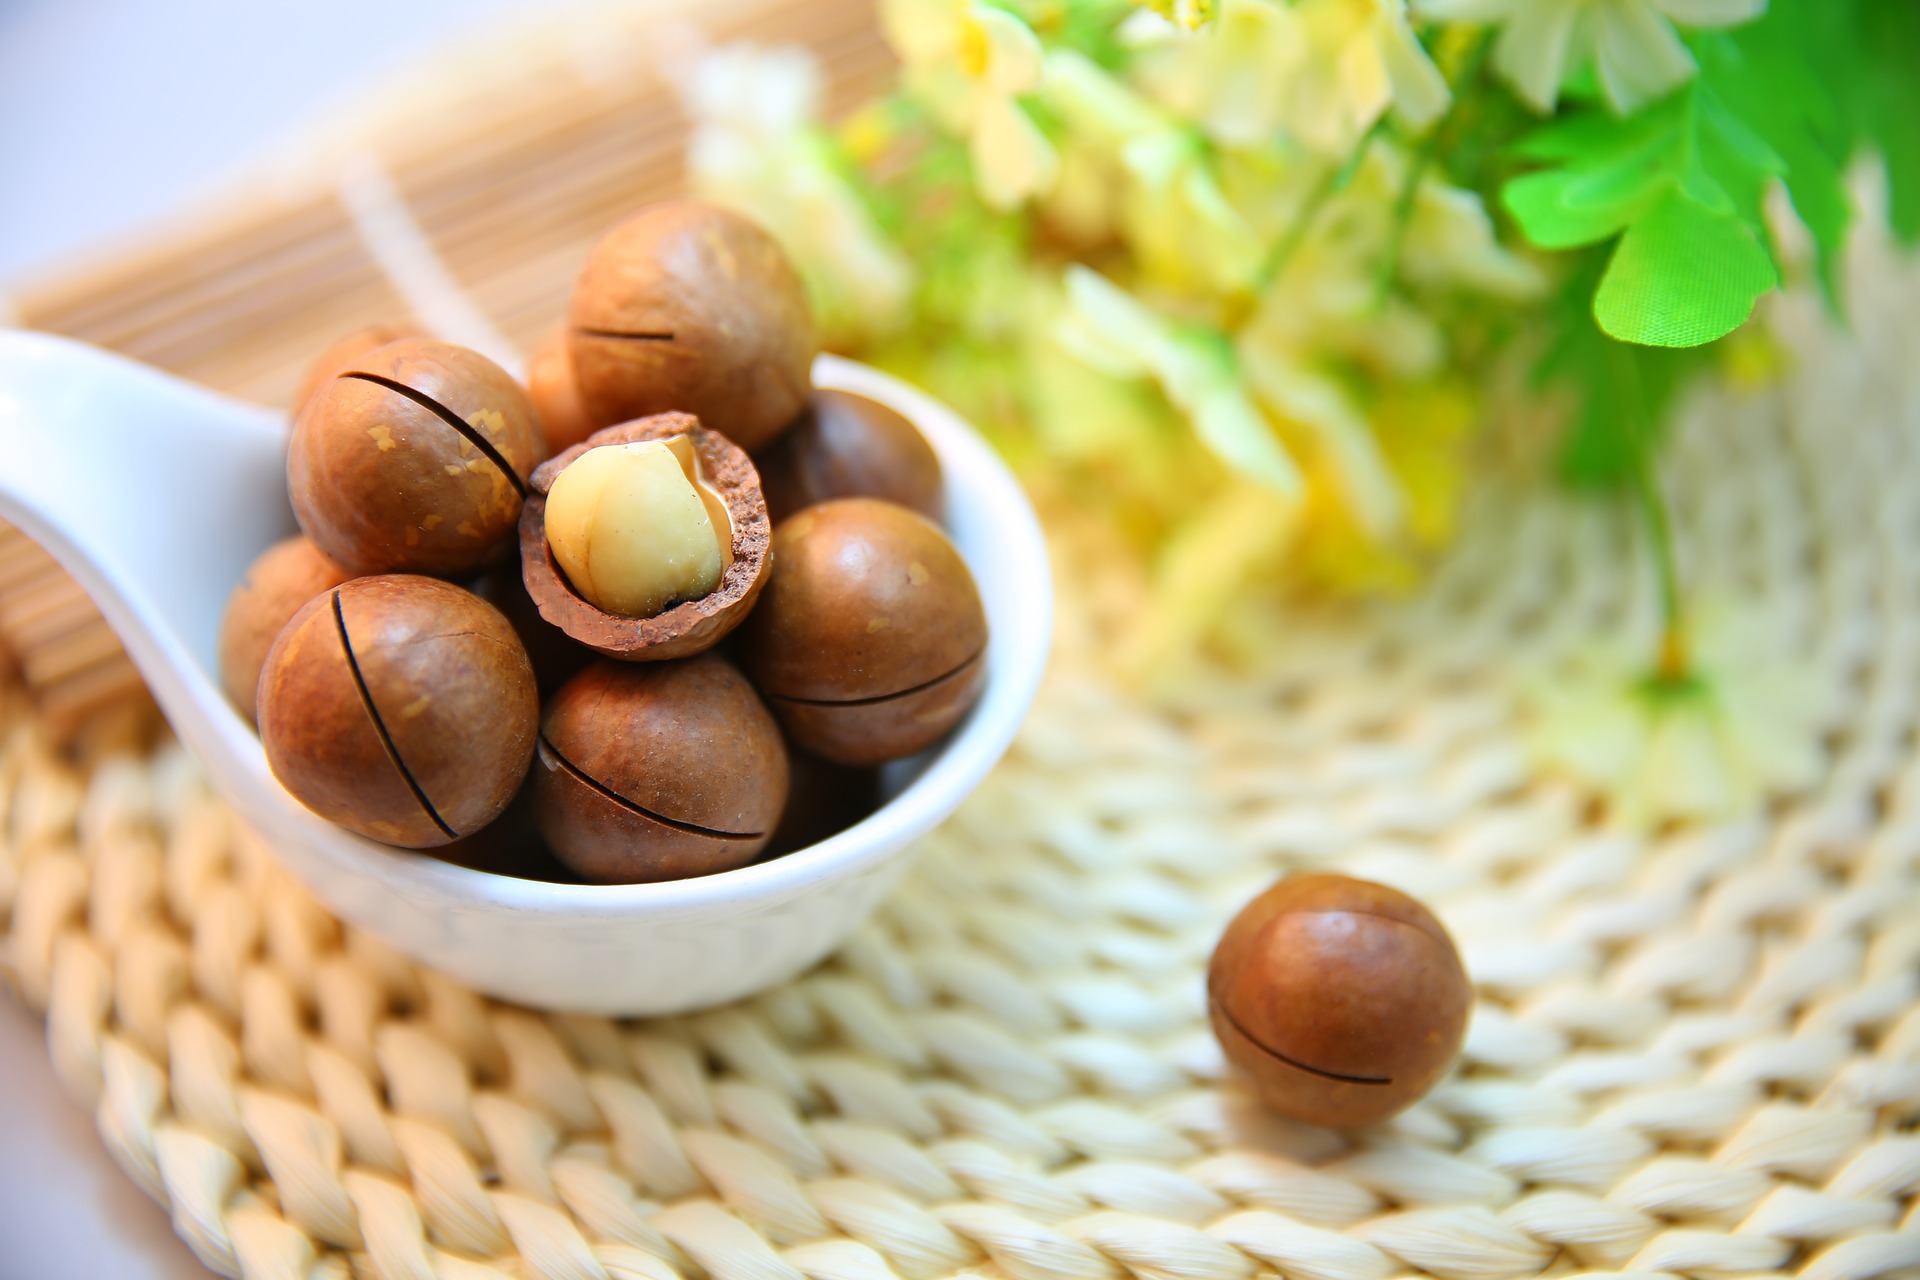 macadamia-nuts-gb4c8dd5a1_1920